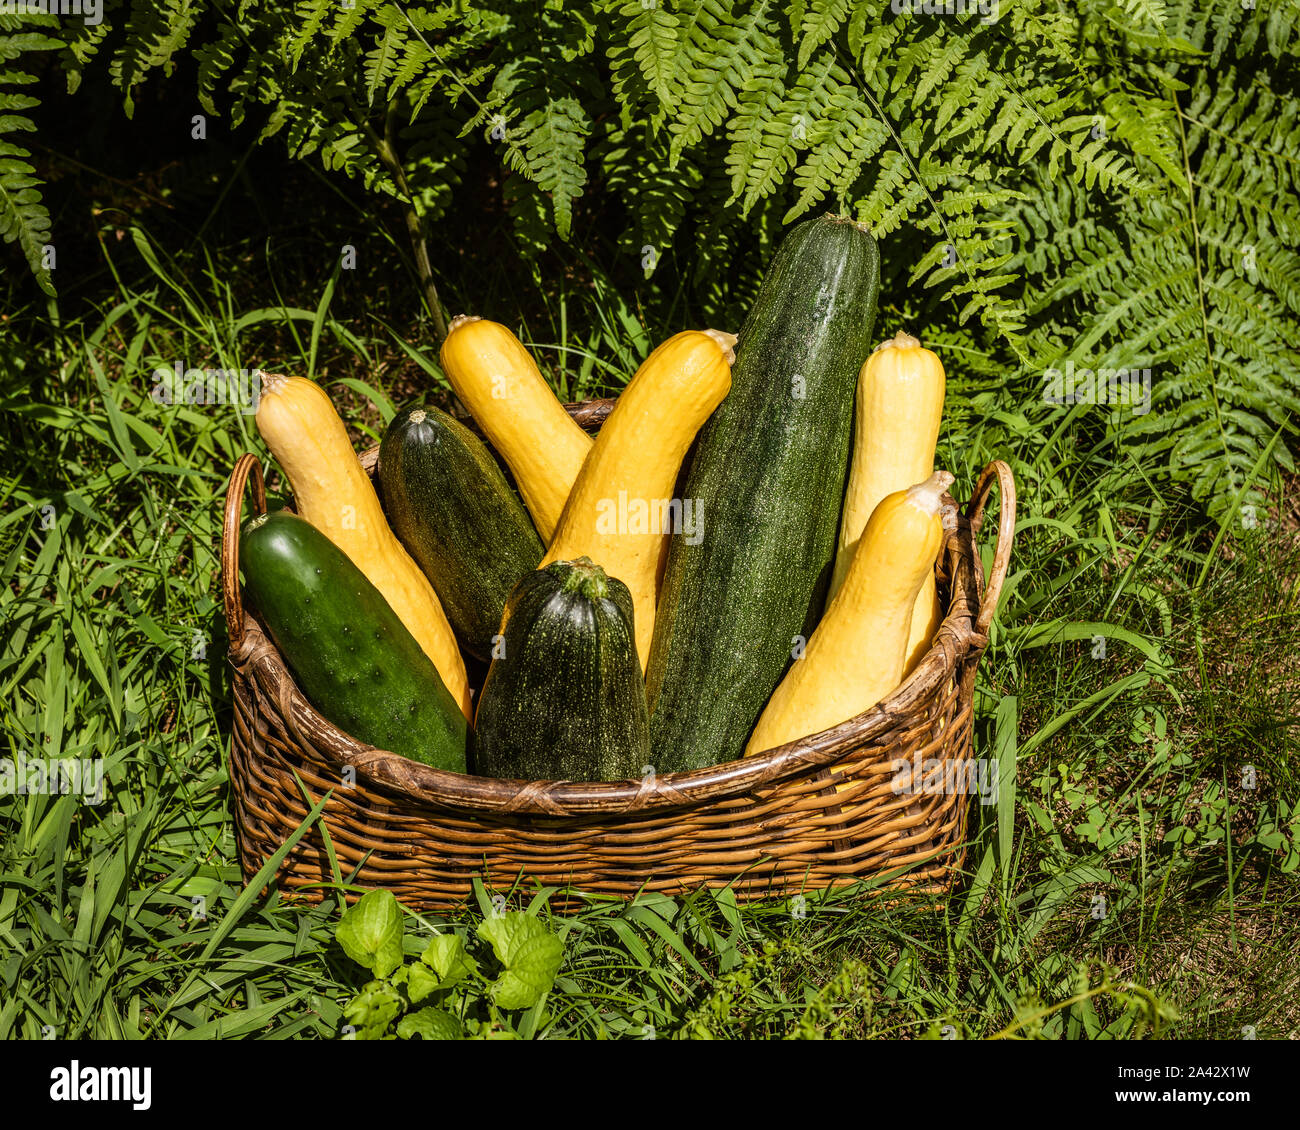 Calabaza amarilla madura y calabacín verde recién cosechado del jardín, organizado en una canasta de mimbre sentada en hierba verde frente a helechos verdes Foto de stock